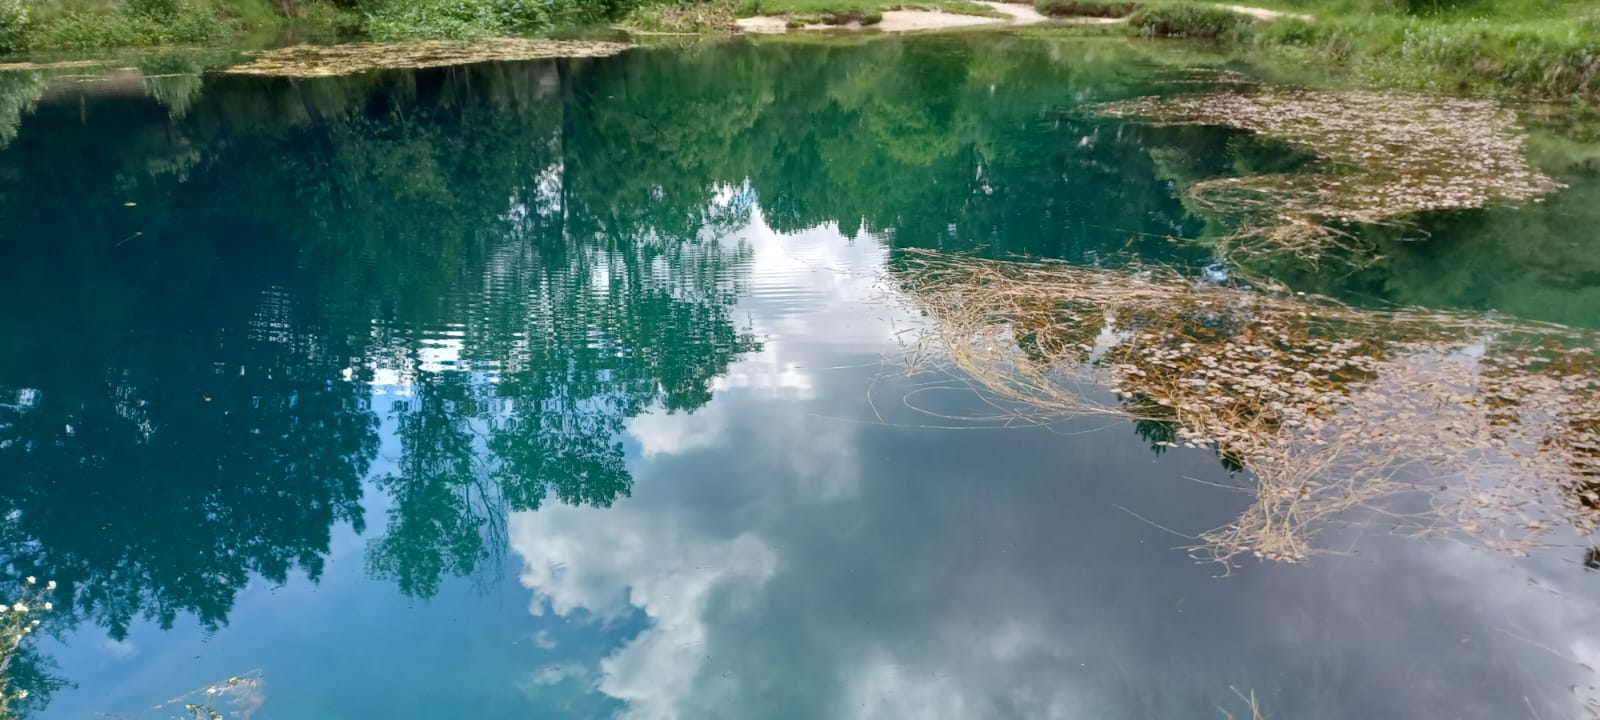 La belleza del reflejo agua · Calatañazor #Juanjo Juanjo Monge 